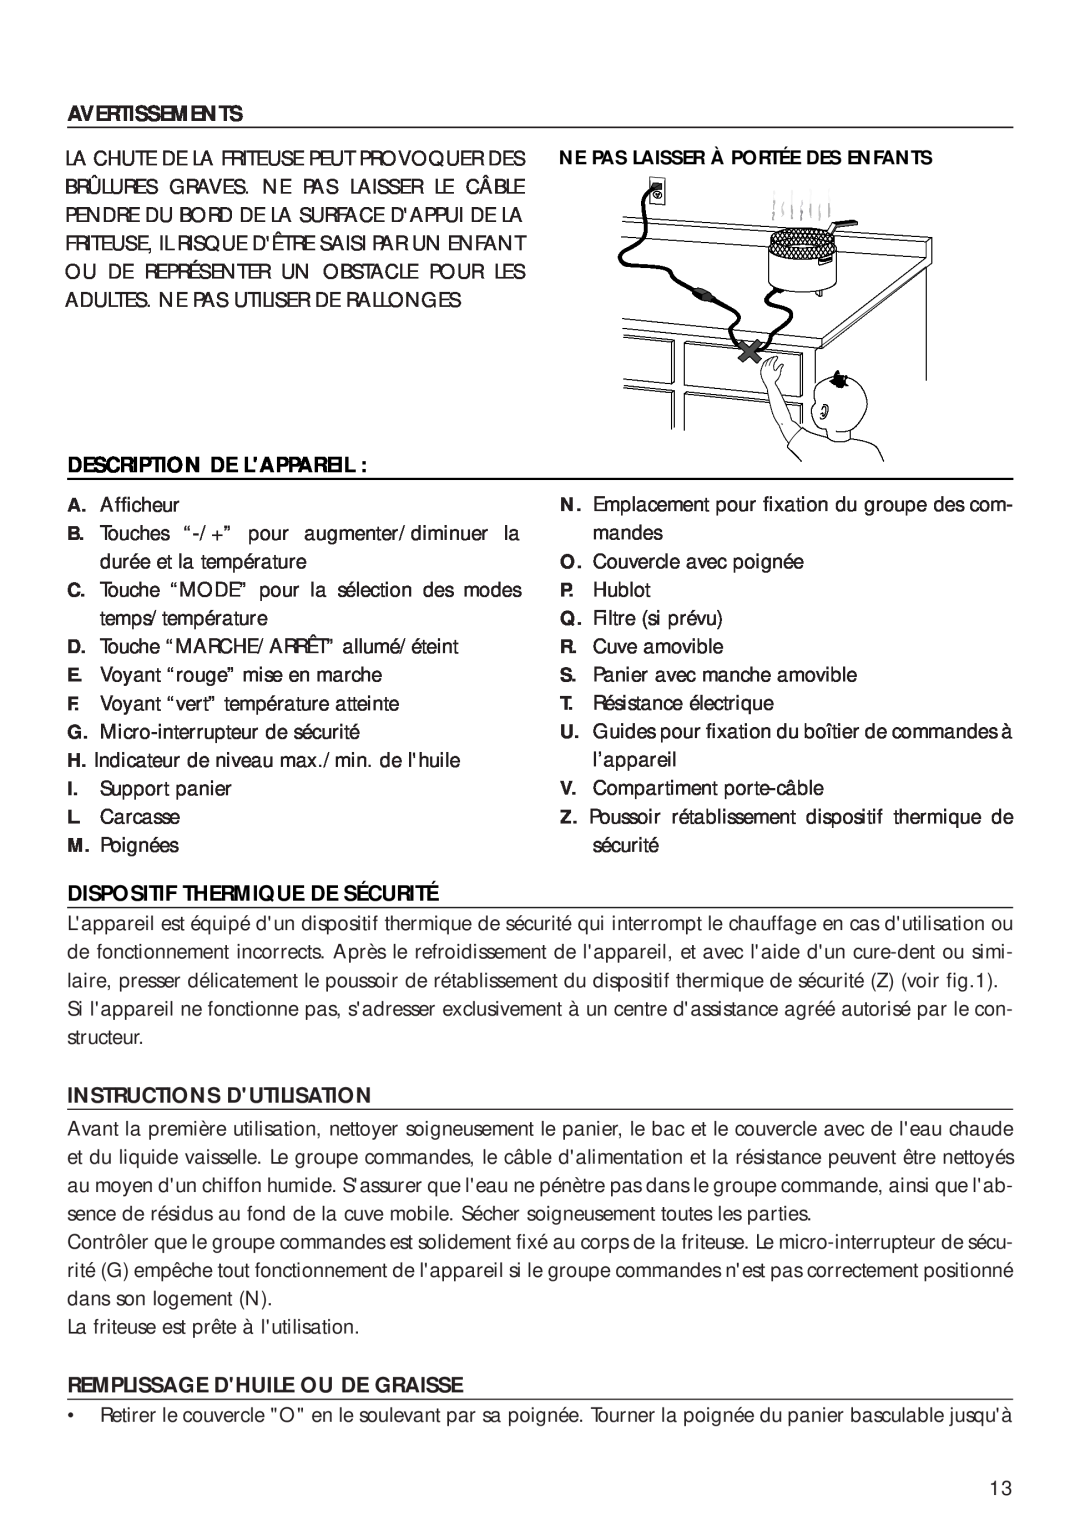 DeLonghi D14427DZ Description De Lappareil, Dispositif Thermique De Sécurité, Instructions Dutilisation, Avertissements 